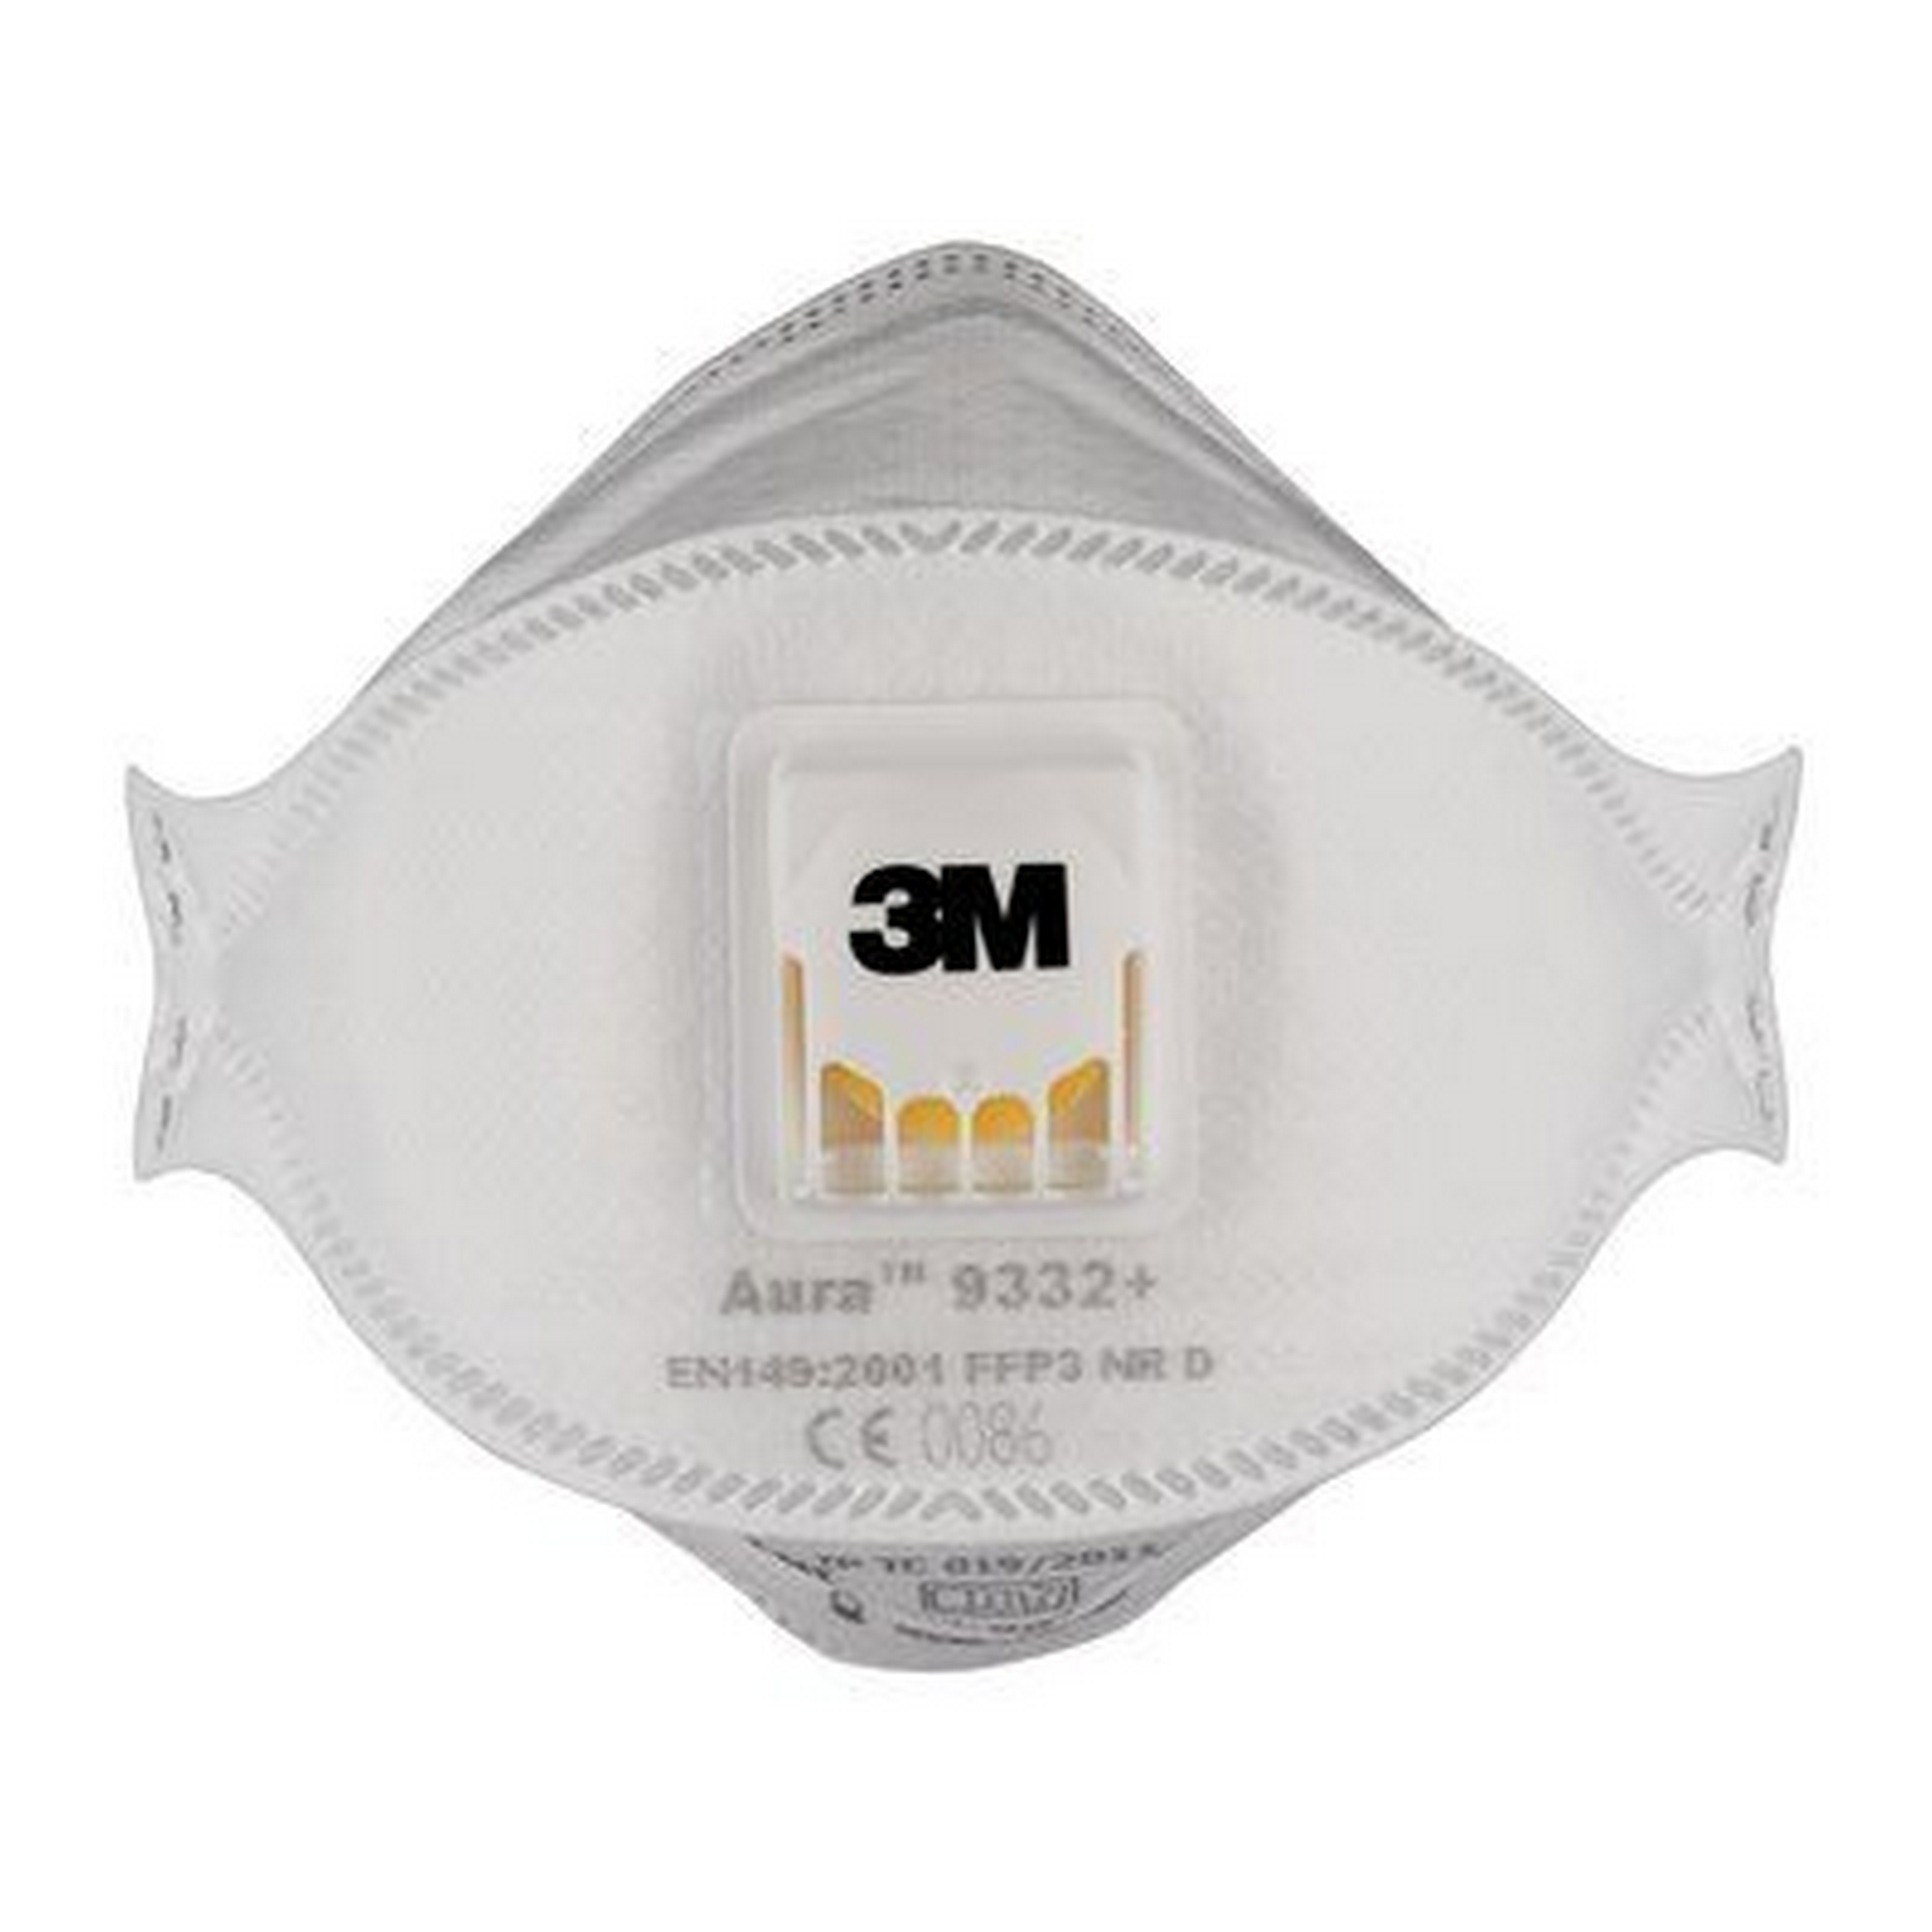 FFP3-Atemschutzmaske '9332+' mit Ventil, 10 Stück + product picture